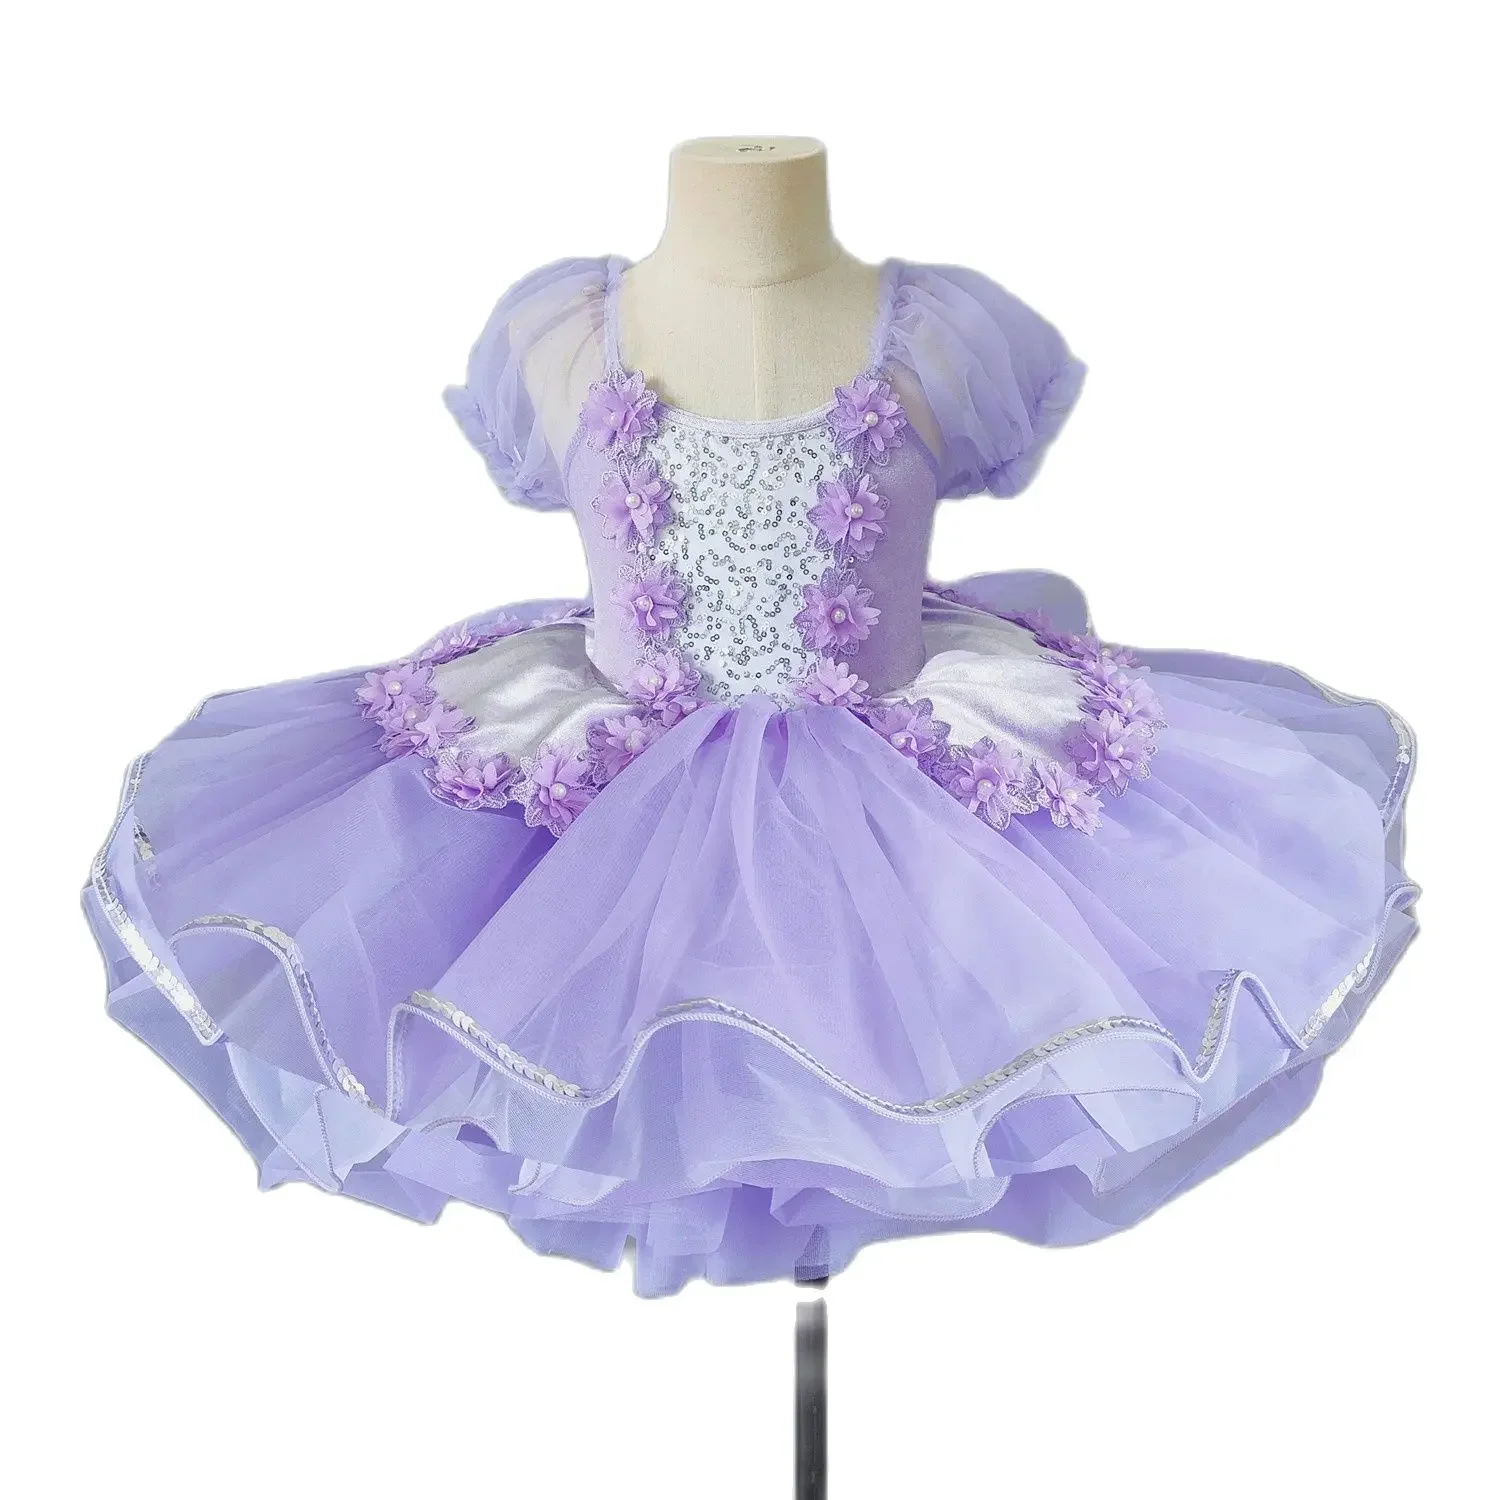 

Детская балетная юбка, цветочный костюм для выступлений, балетное платье для современных танцев, розовое, фиолетовое платье принцессы, сценические костюмы